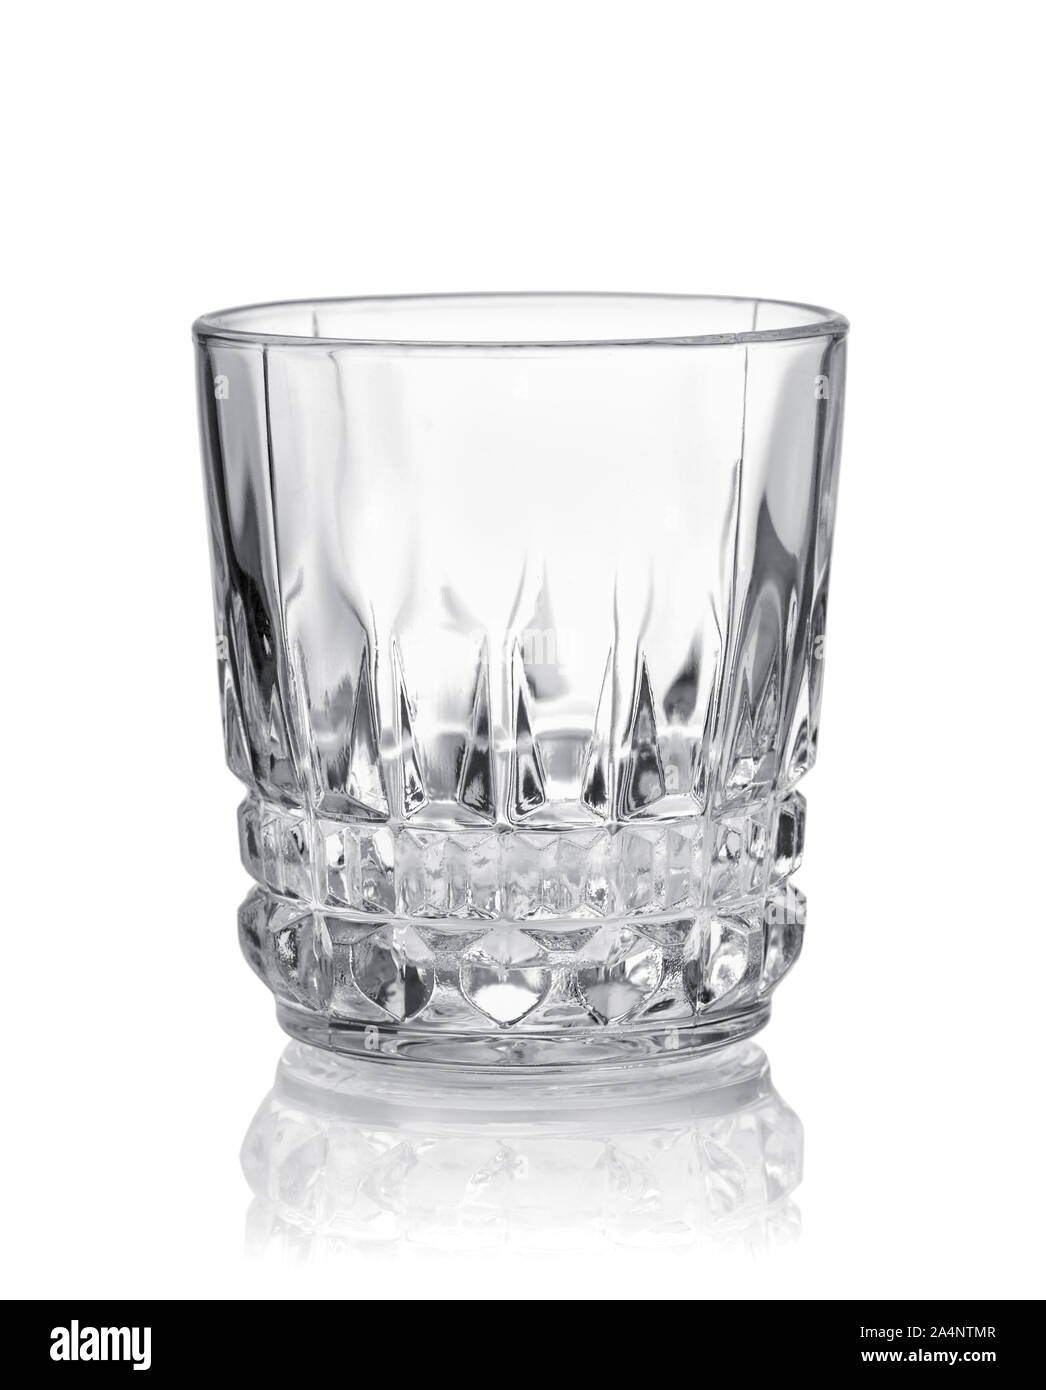 Vue avant du verre coupe de cristal vide isolated on white Banque D'Images